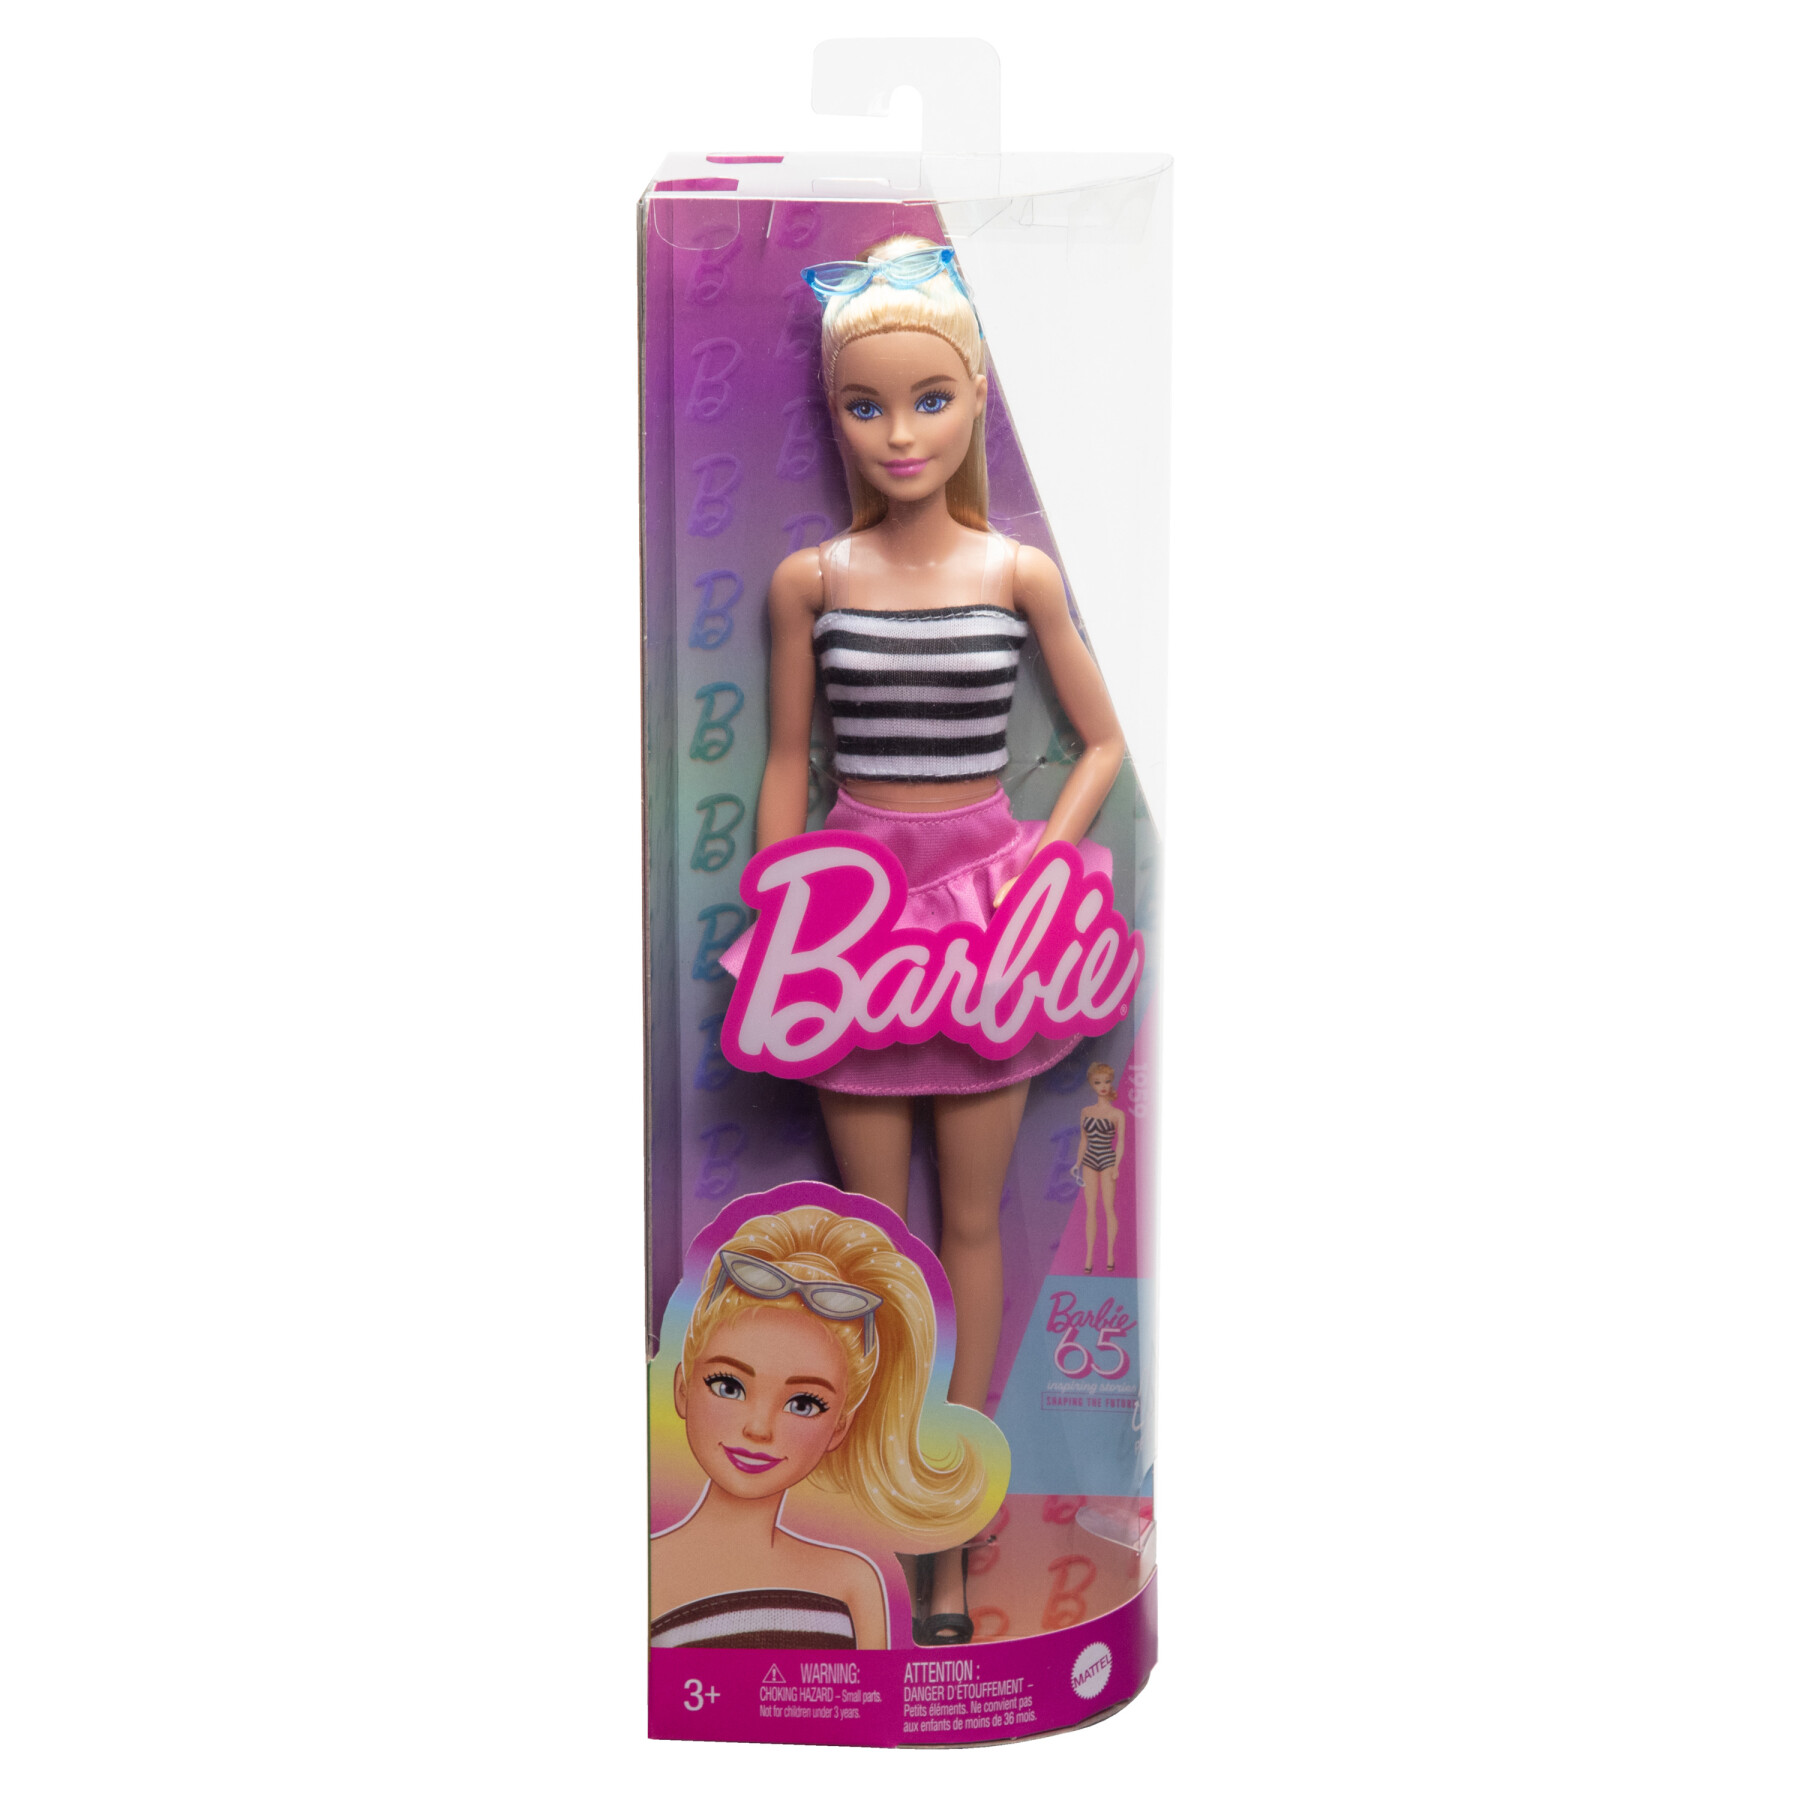 Barbie - fashionistas n. 213 da collezione 65° anniversario, bambola bionda con top a righe - Barbie